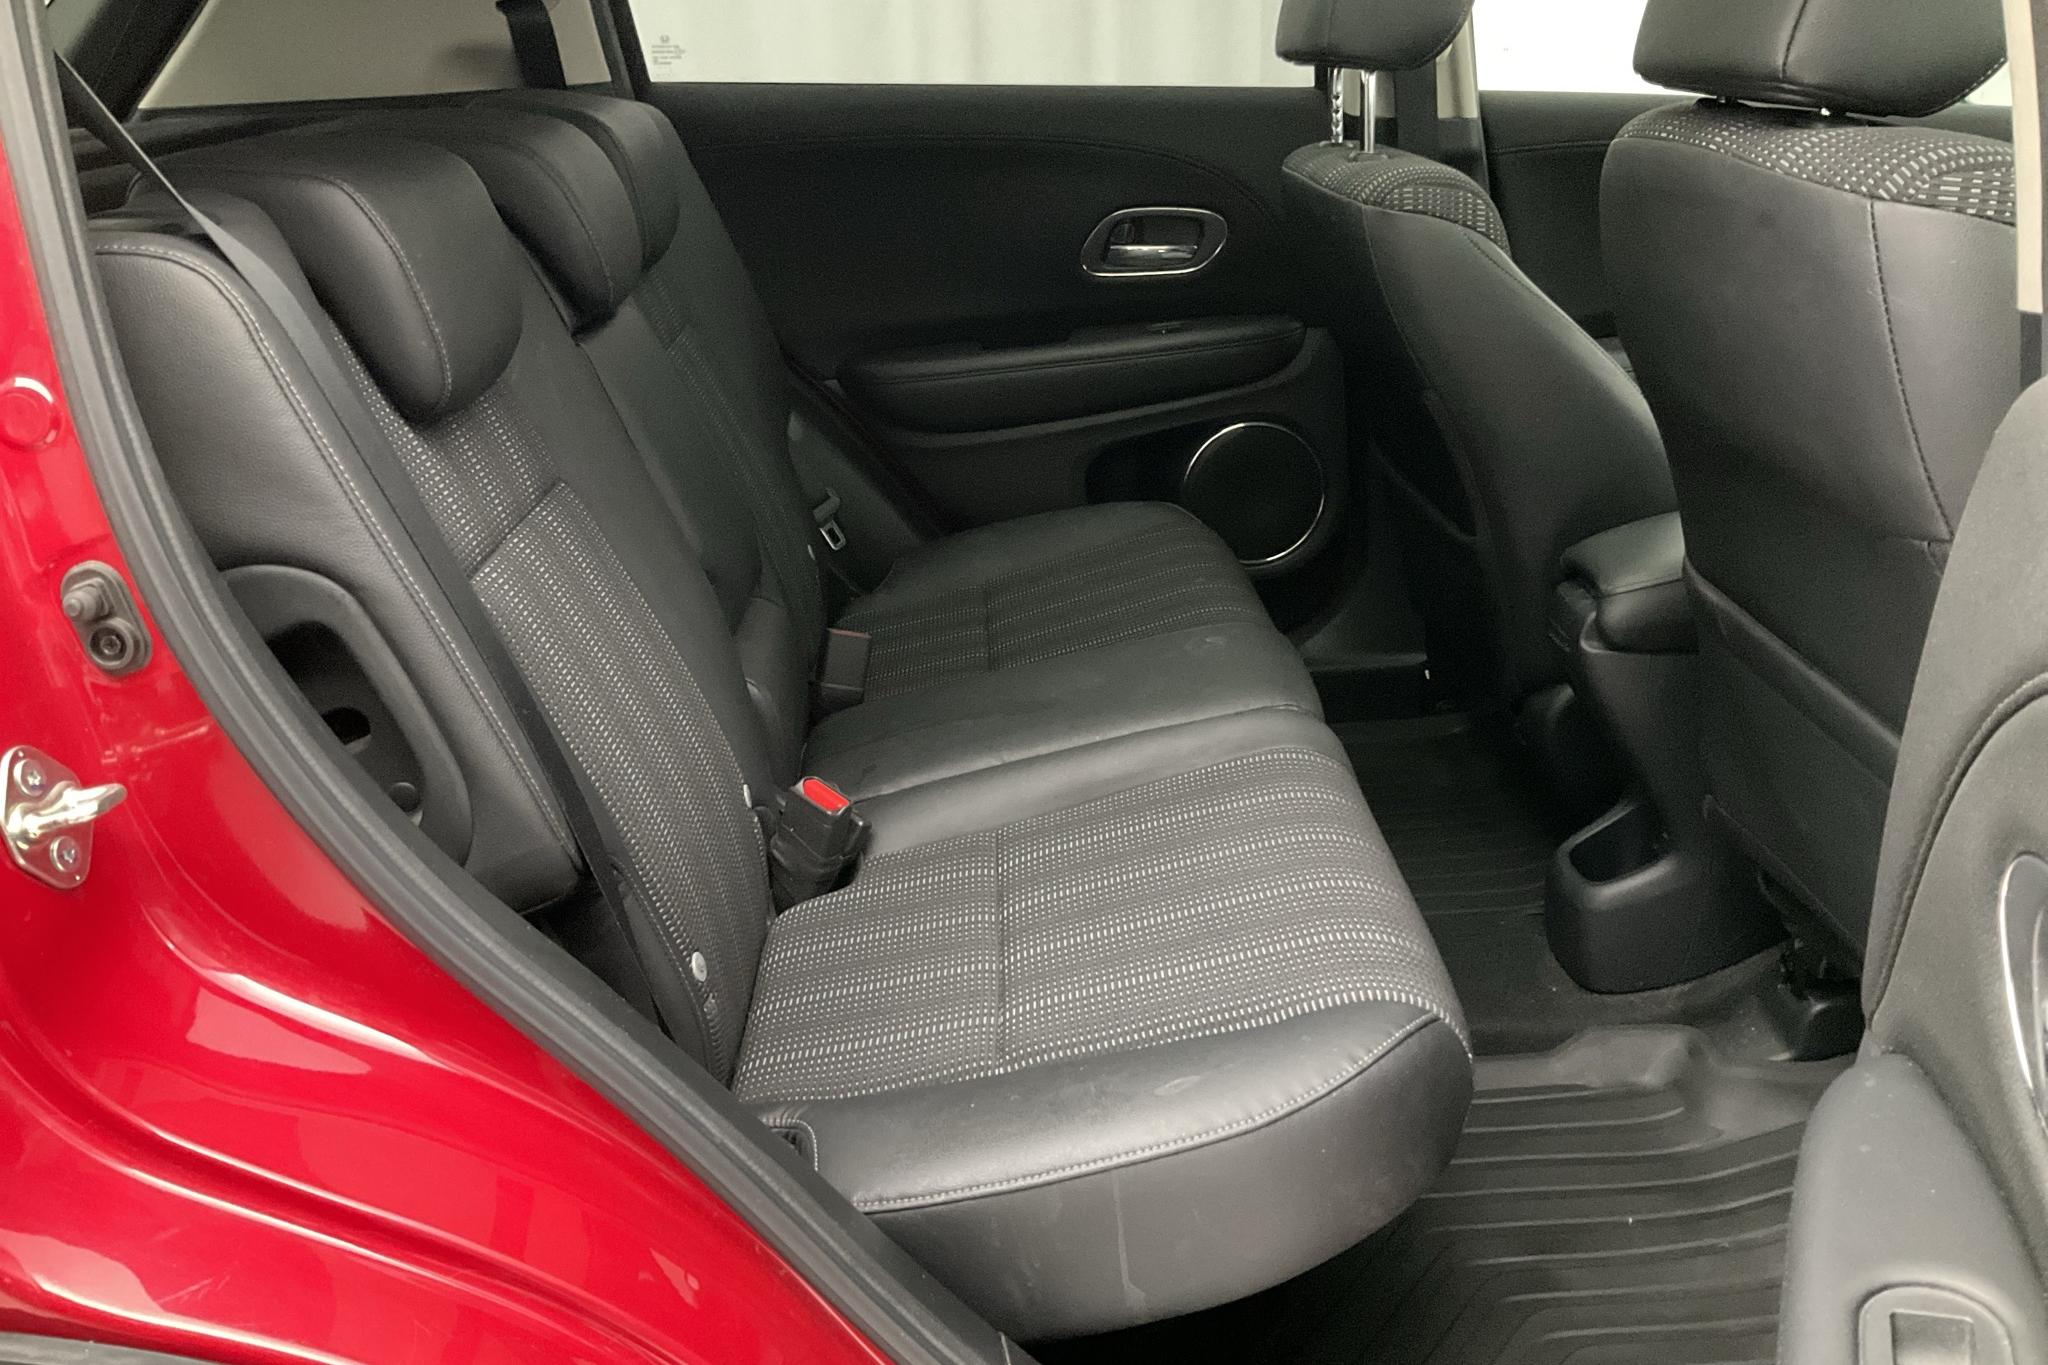 Honda HR-V 1.5 2WD (130hk) - 3 444 mil - Automat - röd - 2017